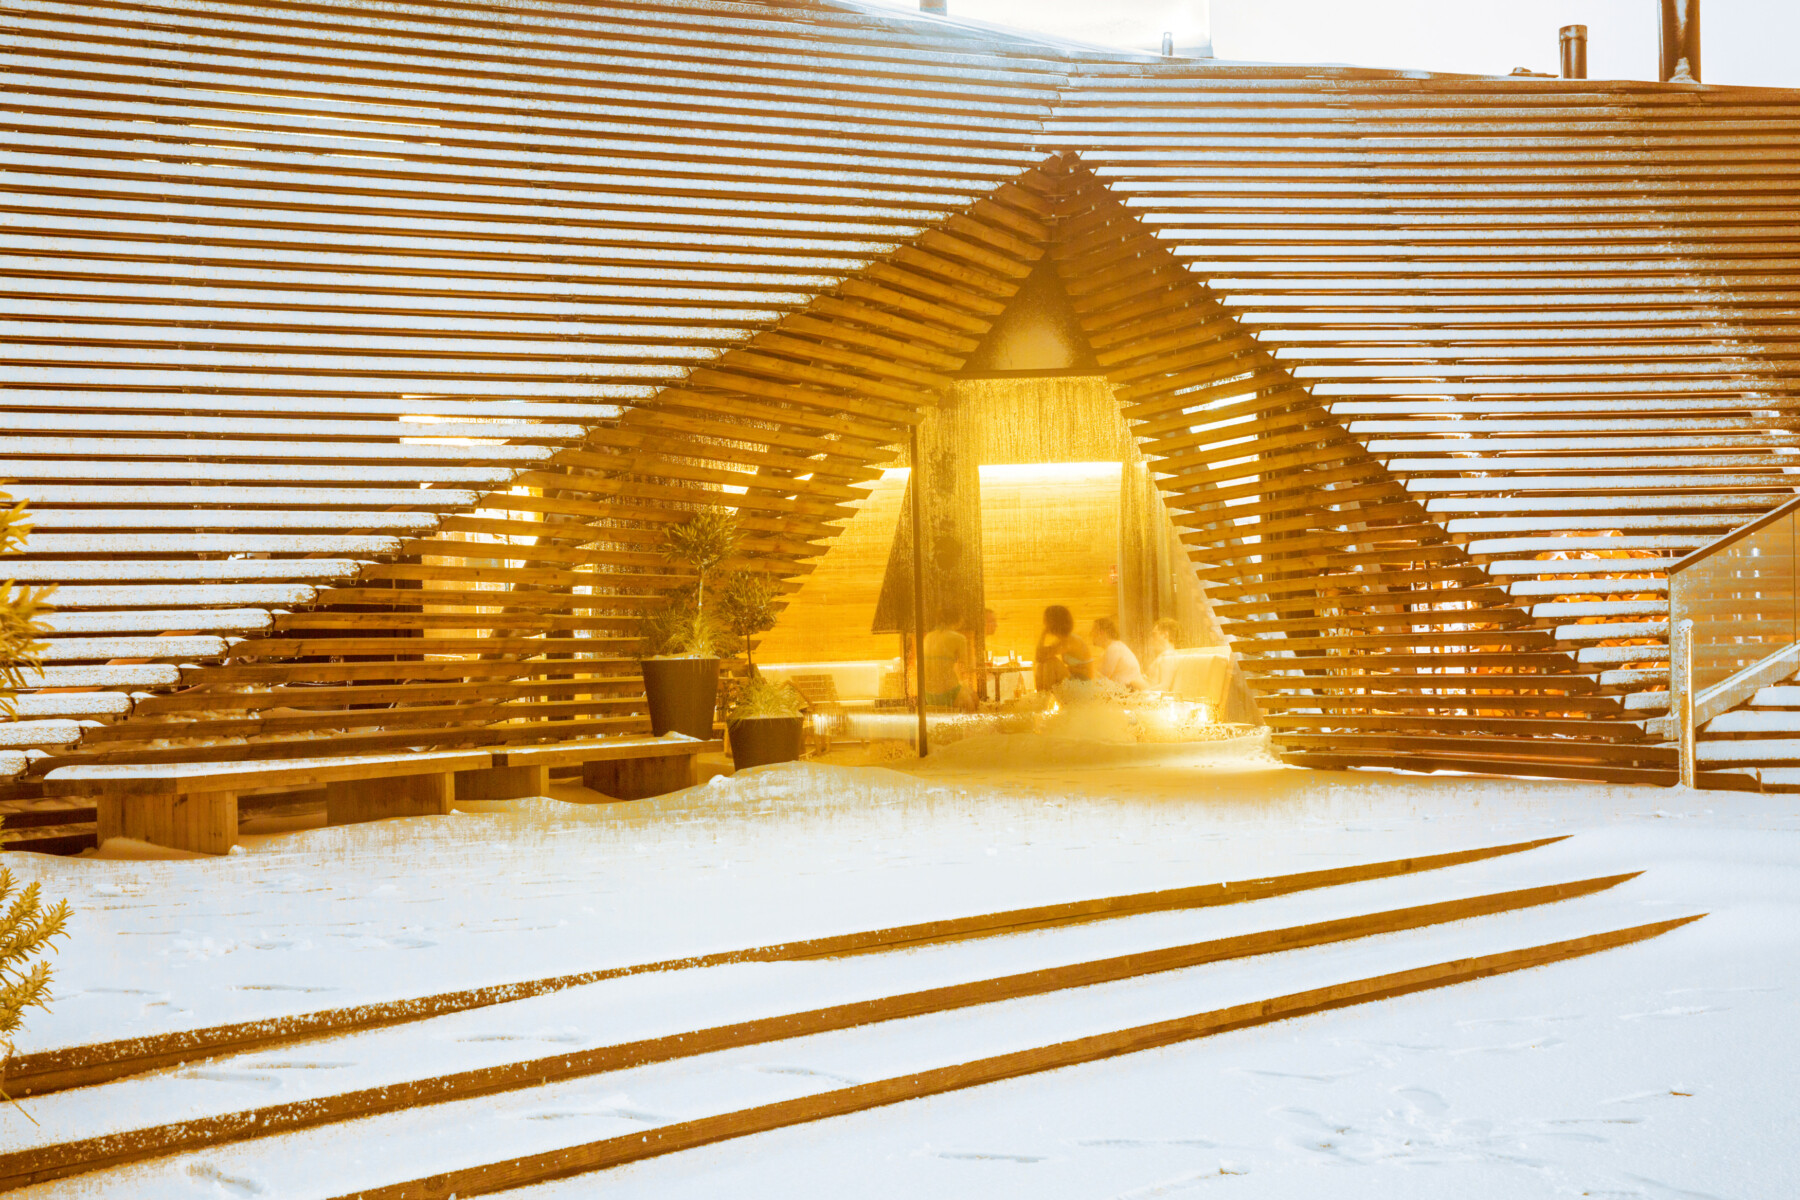 مبنى خشبي ذو قنطرة مثلثة الشكل، يكسوه الثلج من الخارج ويظهر من النافذة أشخاصًا يجلسون في مكان مريح بالداخل.